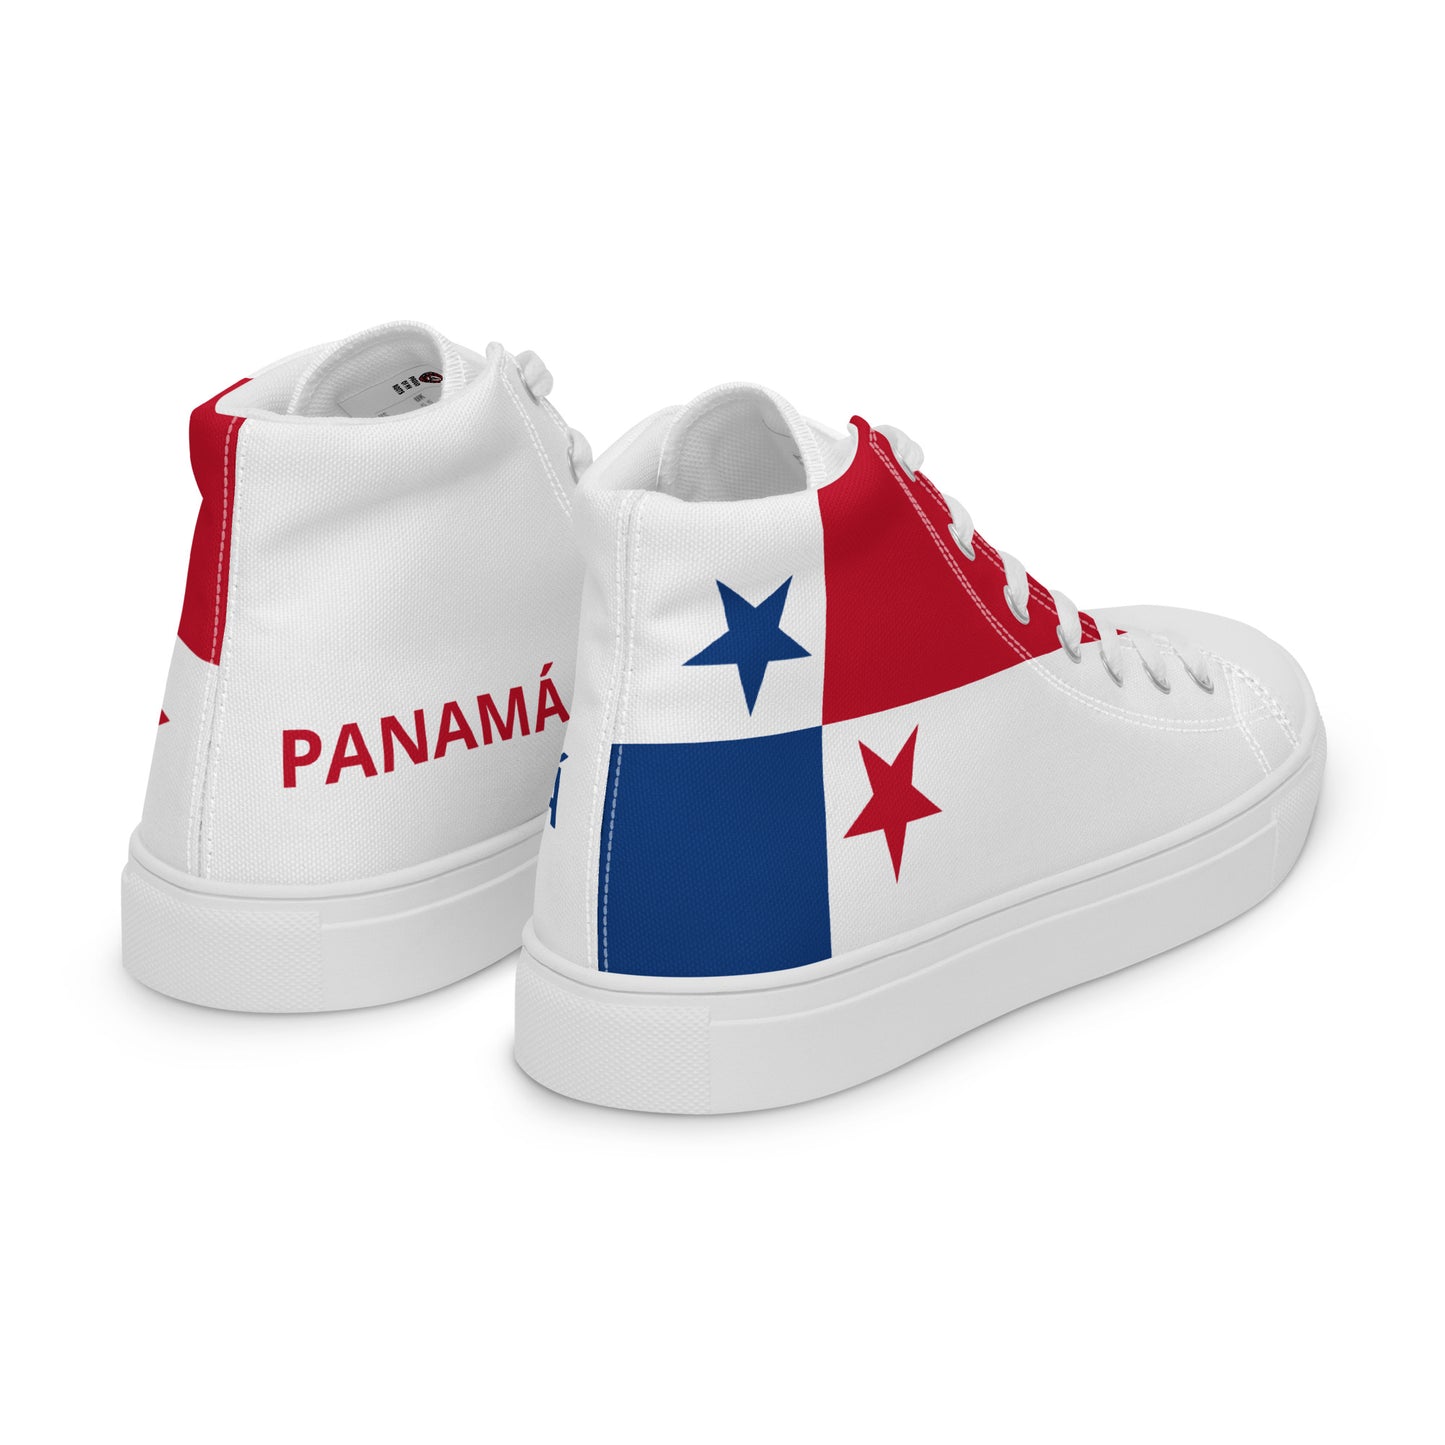 Panamá - Men - Bandera - High top shoes